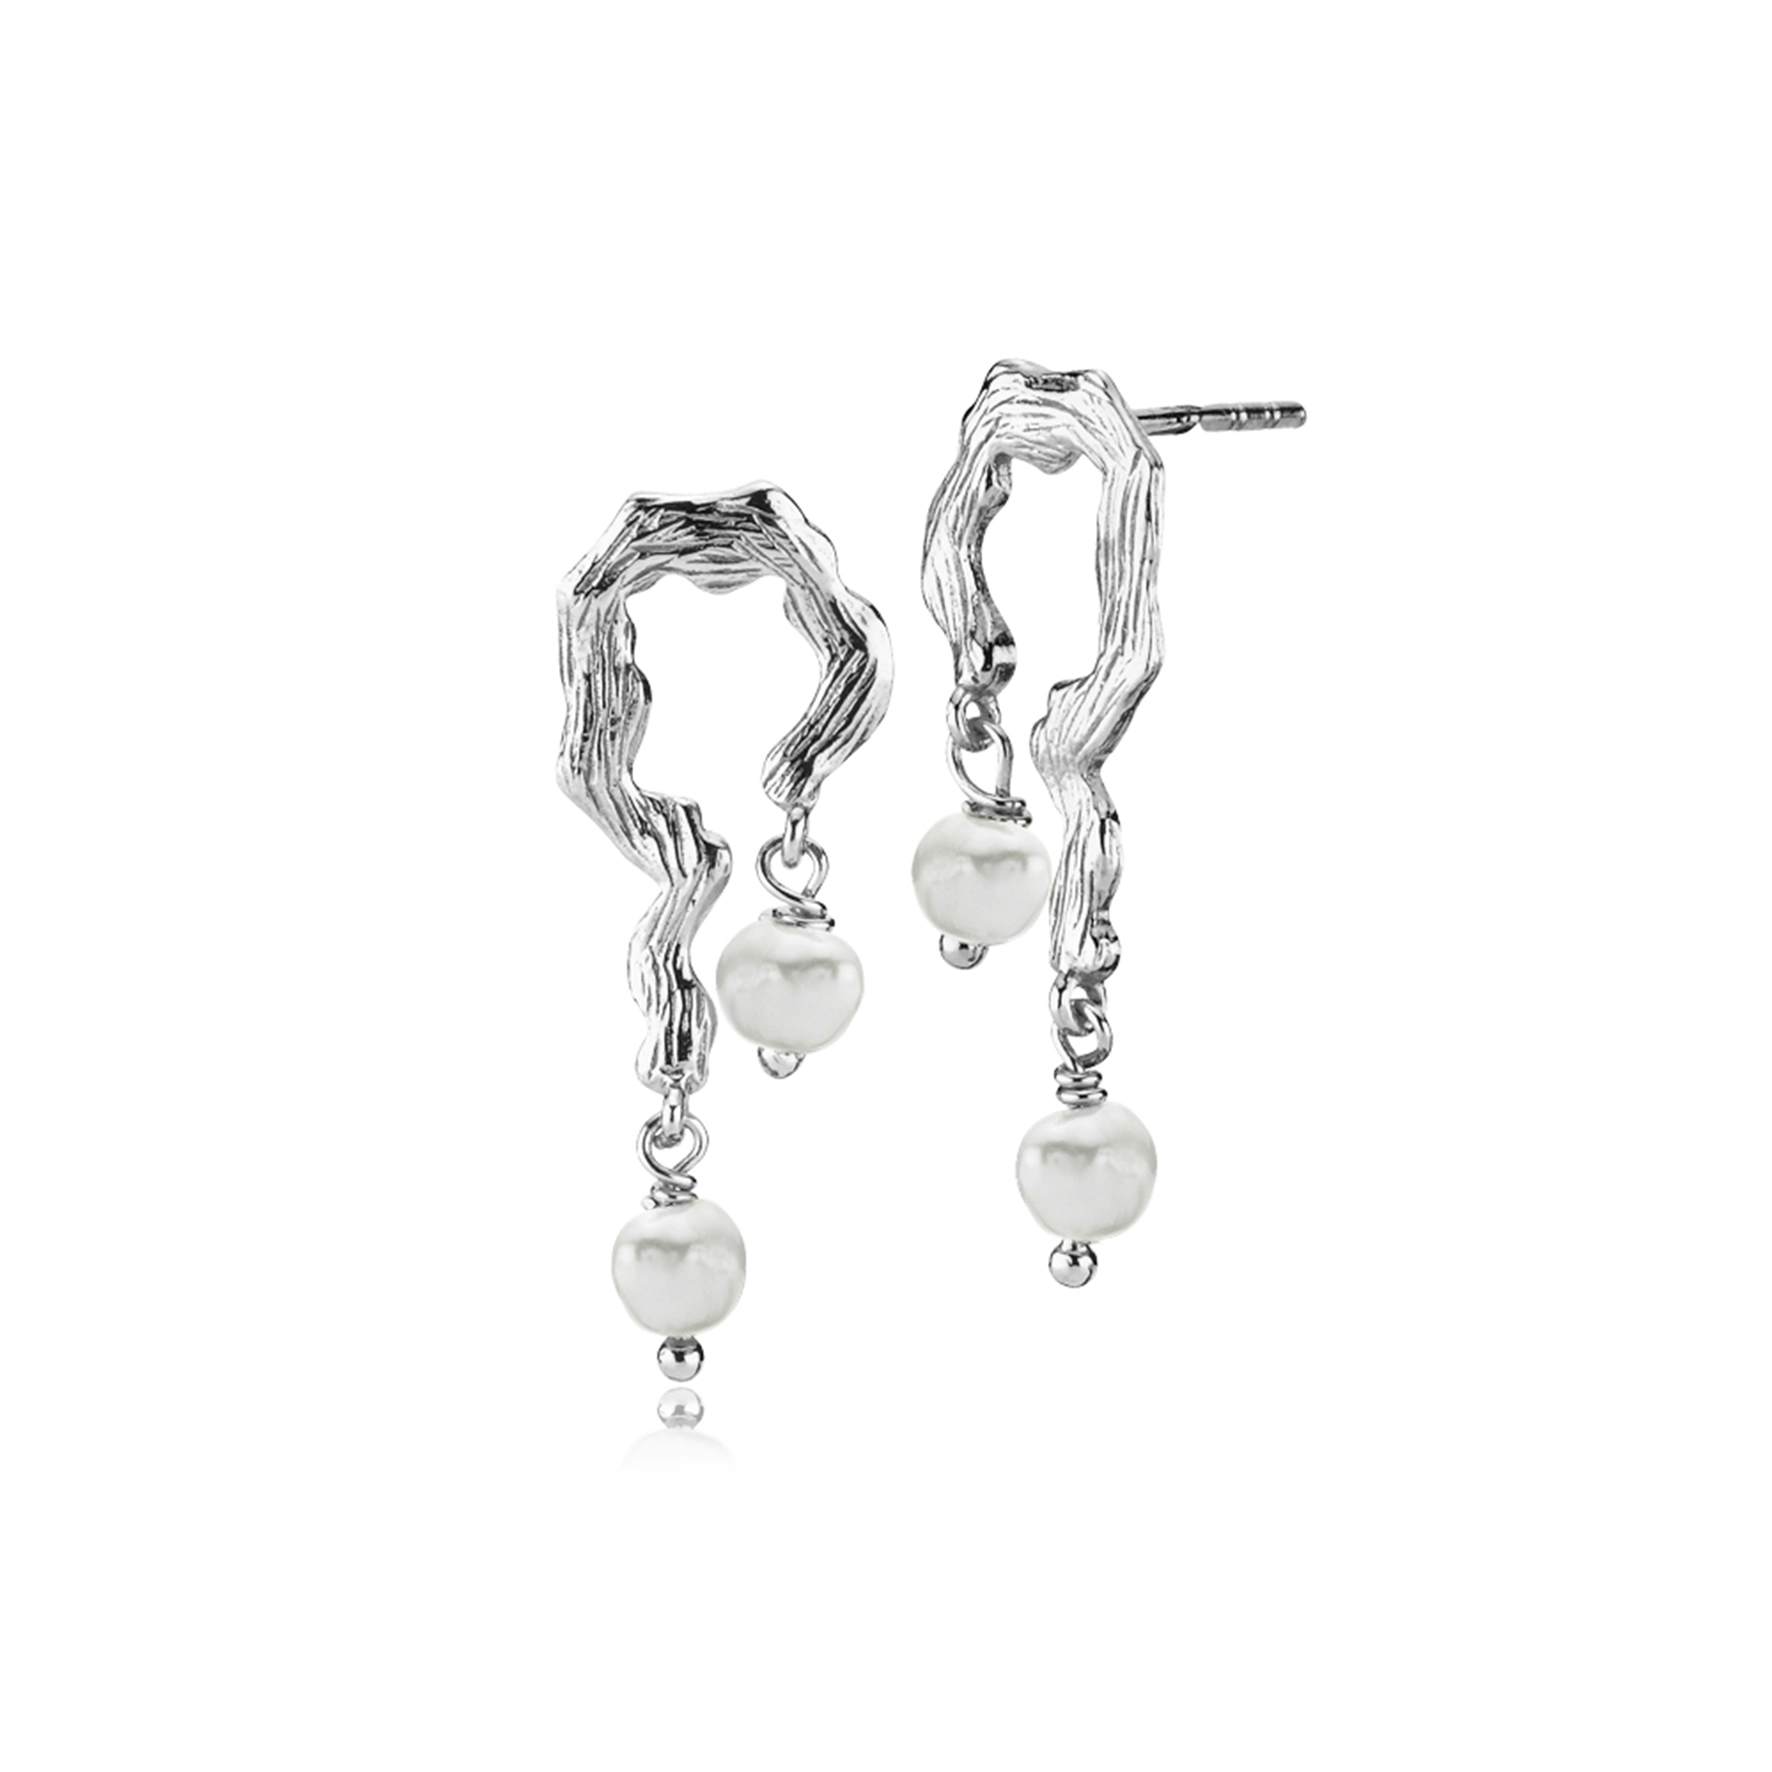 Lærke Bentsen By Sistie Earrings With Pearls fra Sistie i Sølv Sterling 925